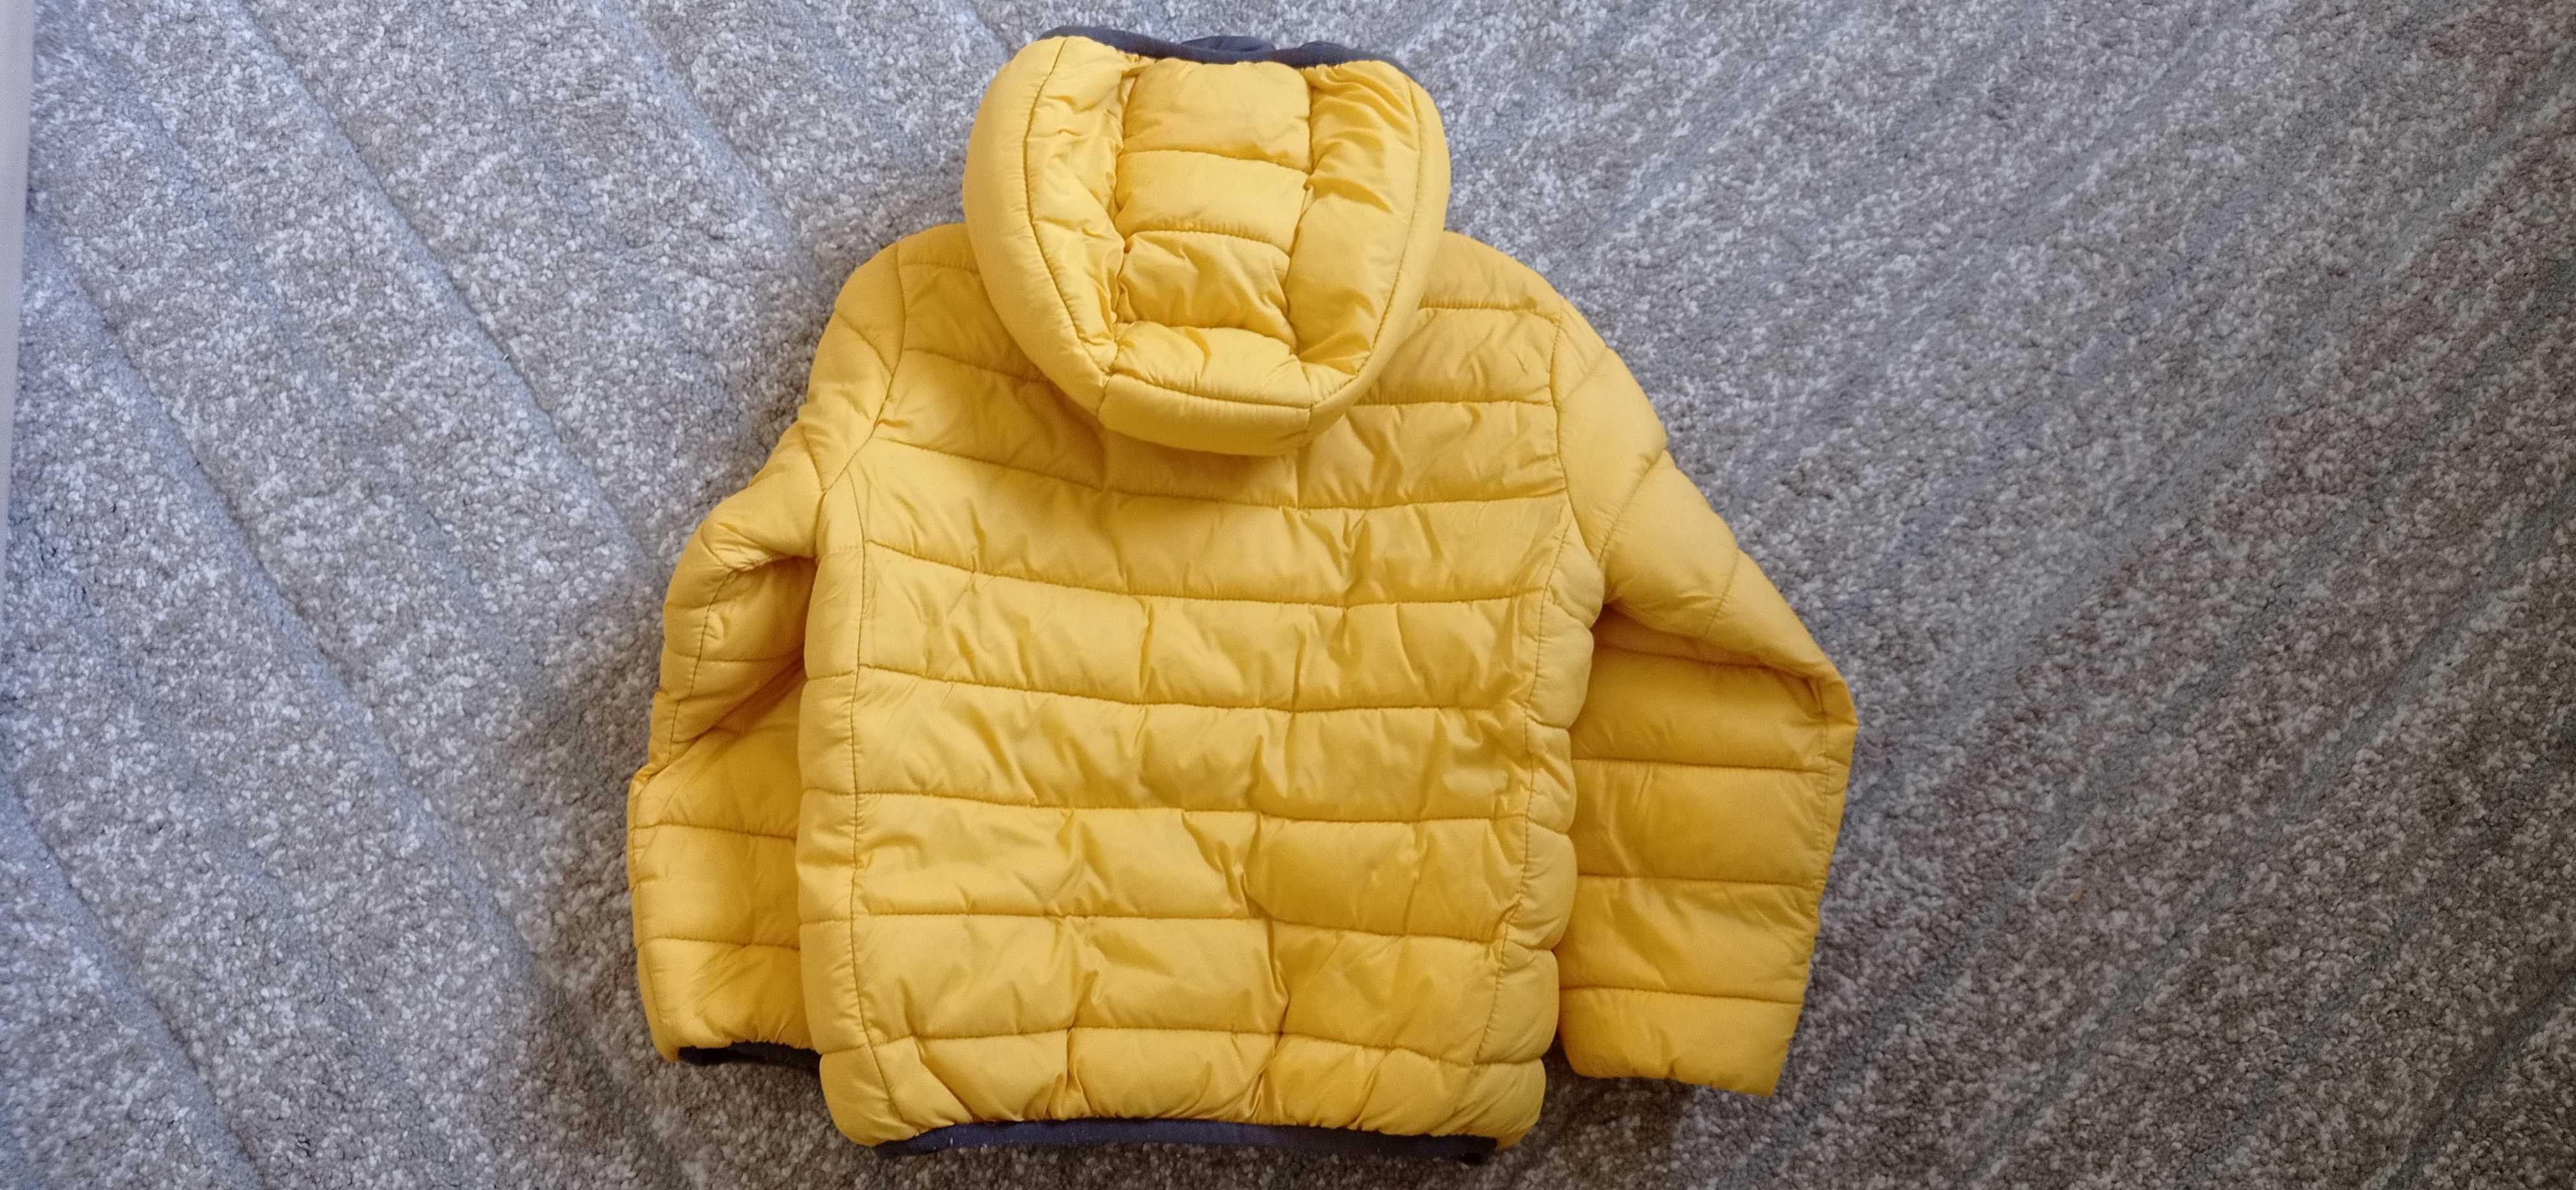 Żółta kurtka dla dziecka 110